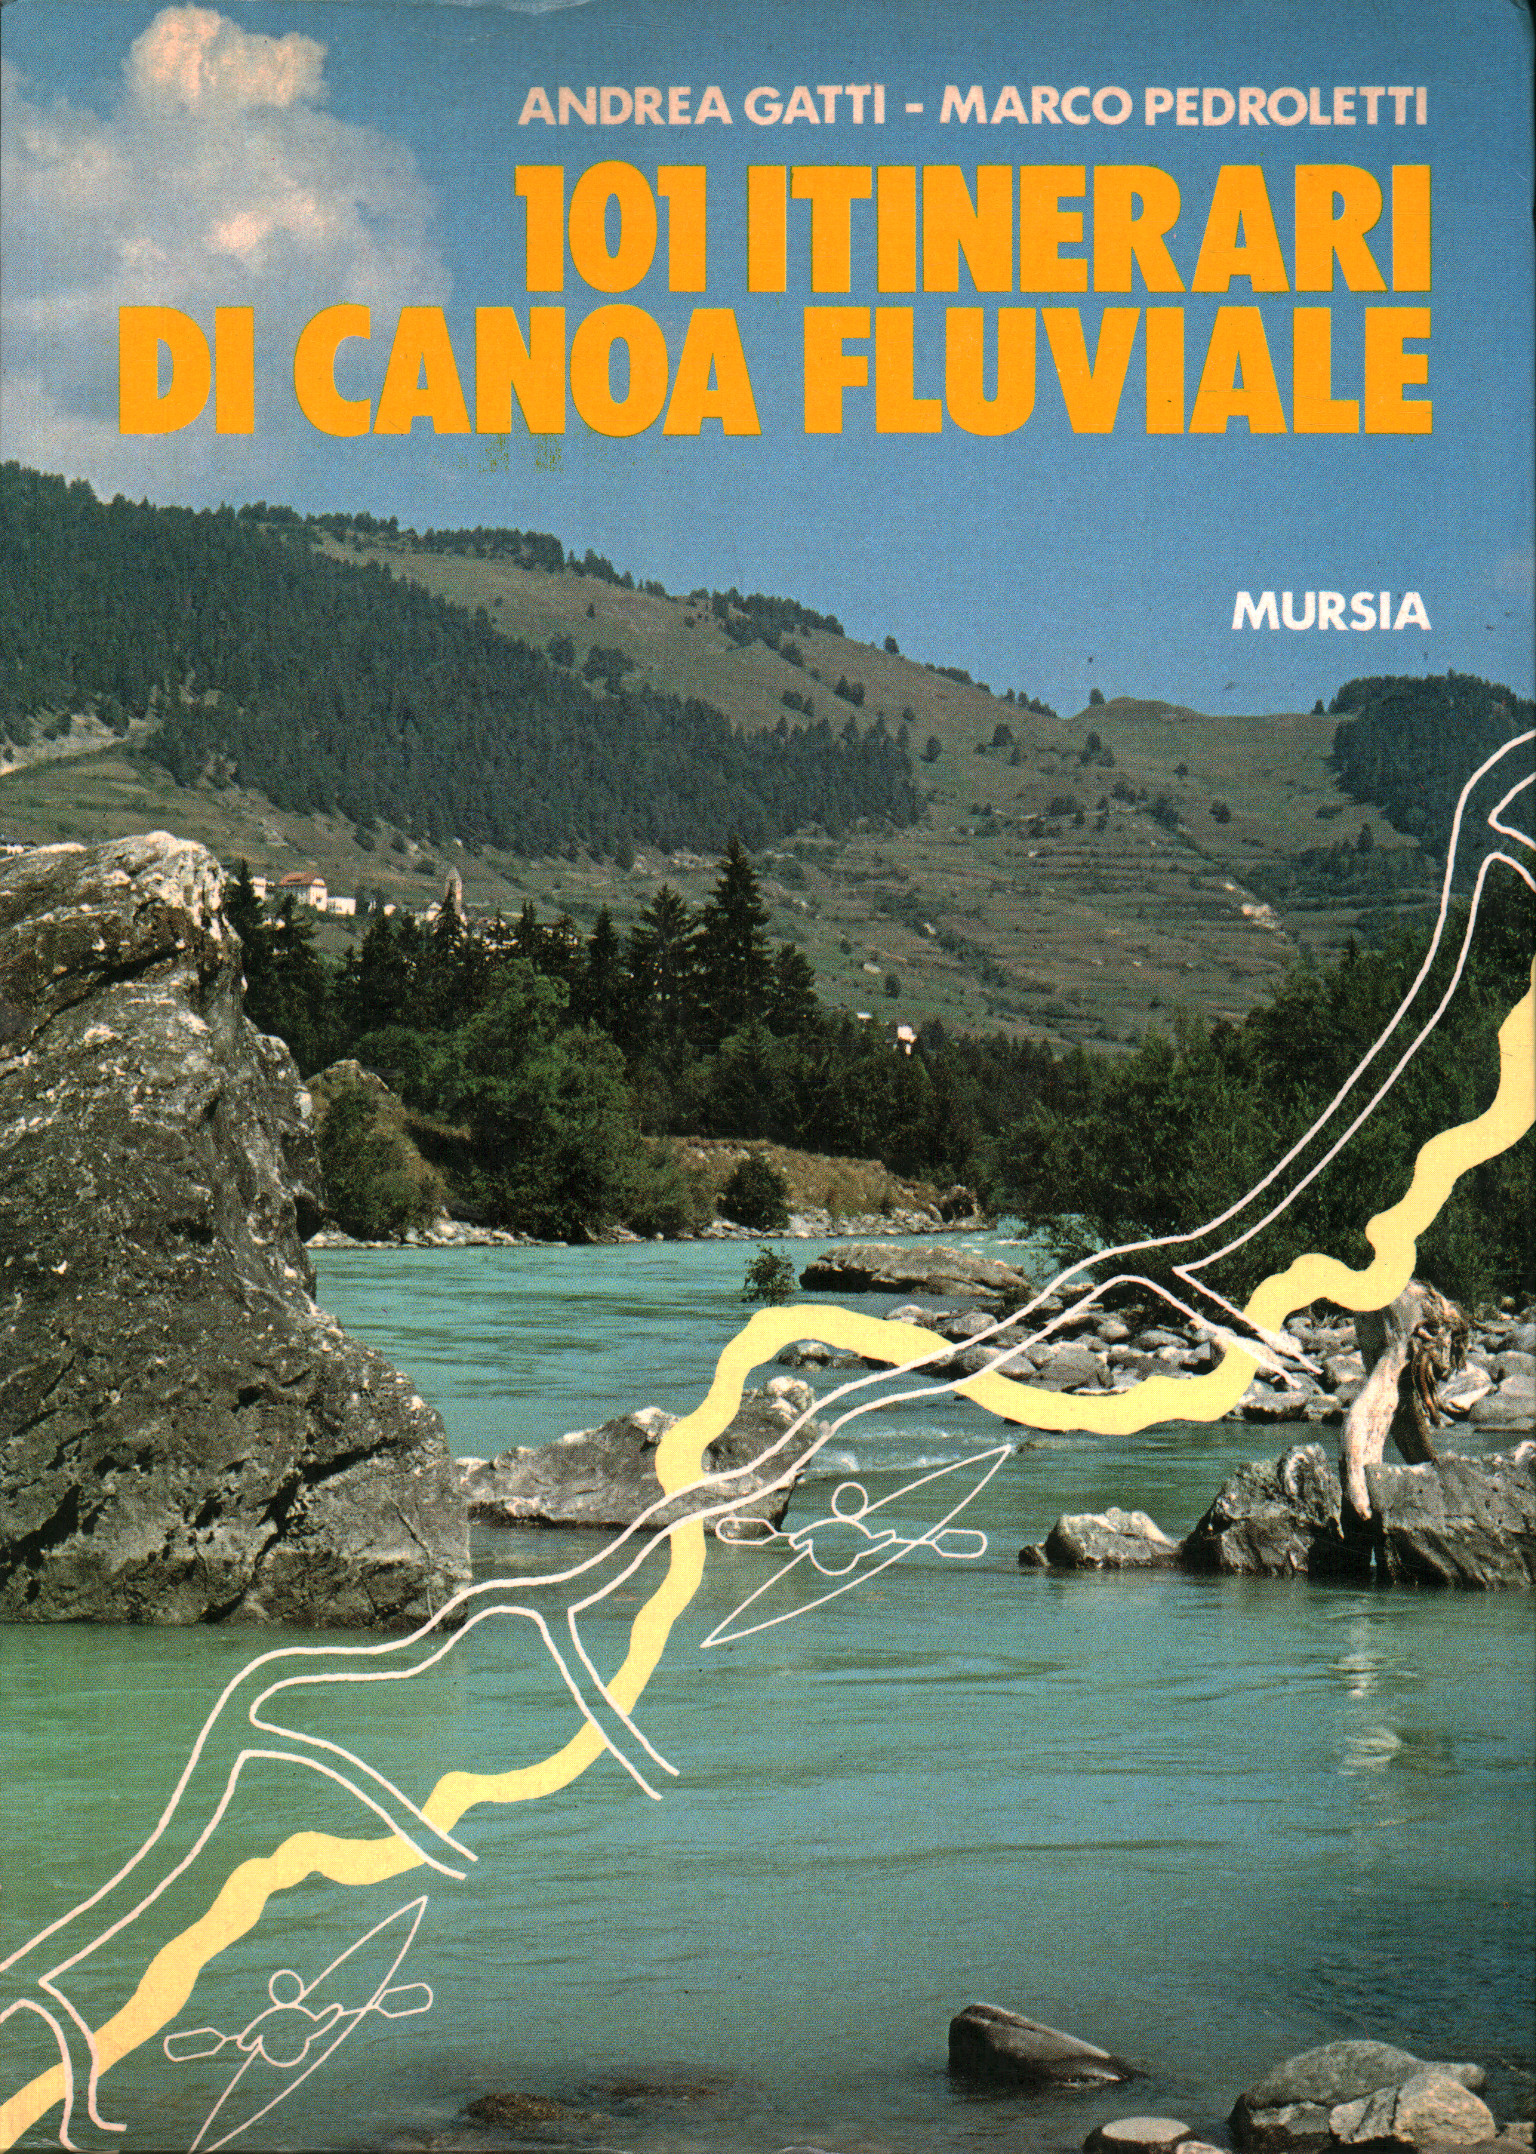 101 itinerari di canoa fluviale, Andrea Gatti Marco Pedroletti